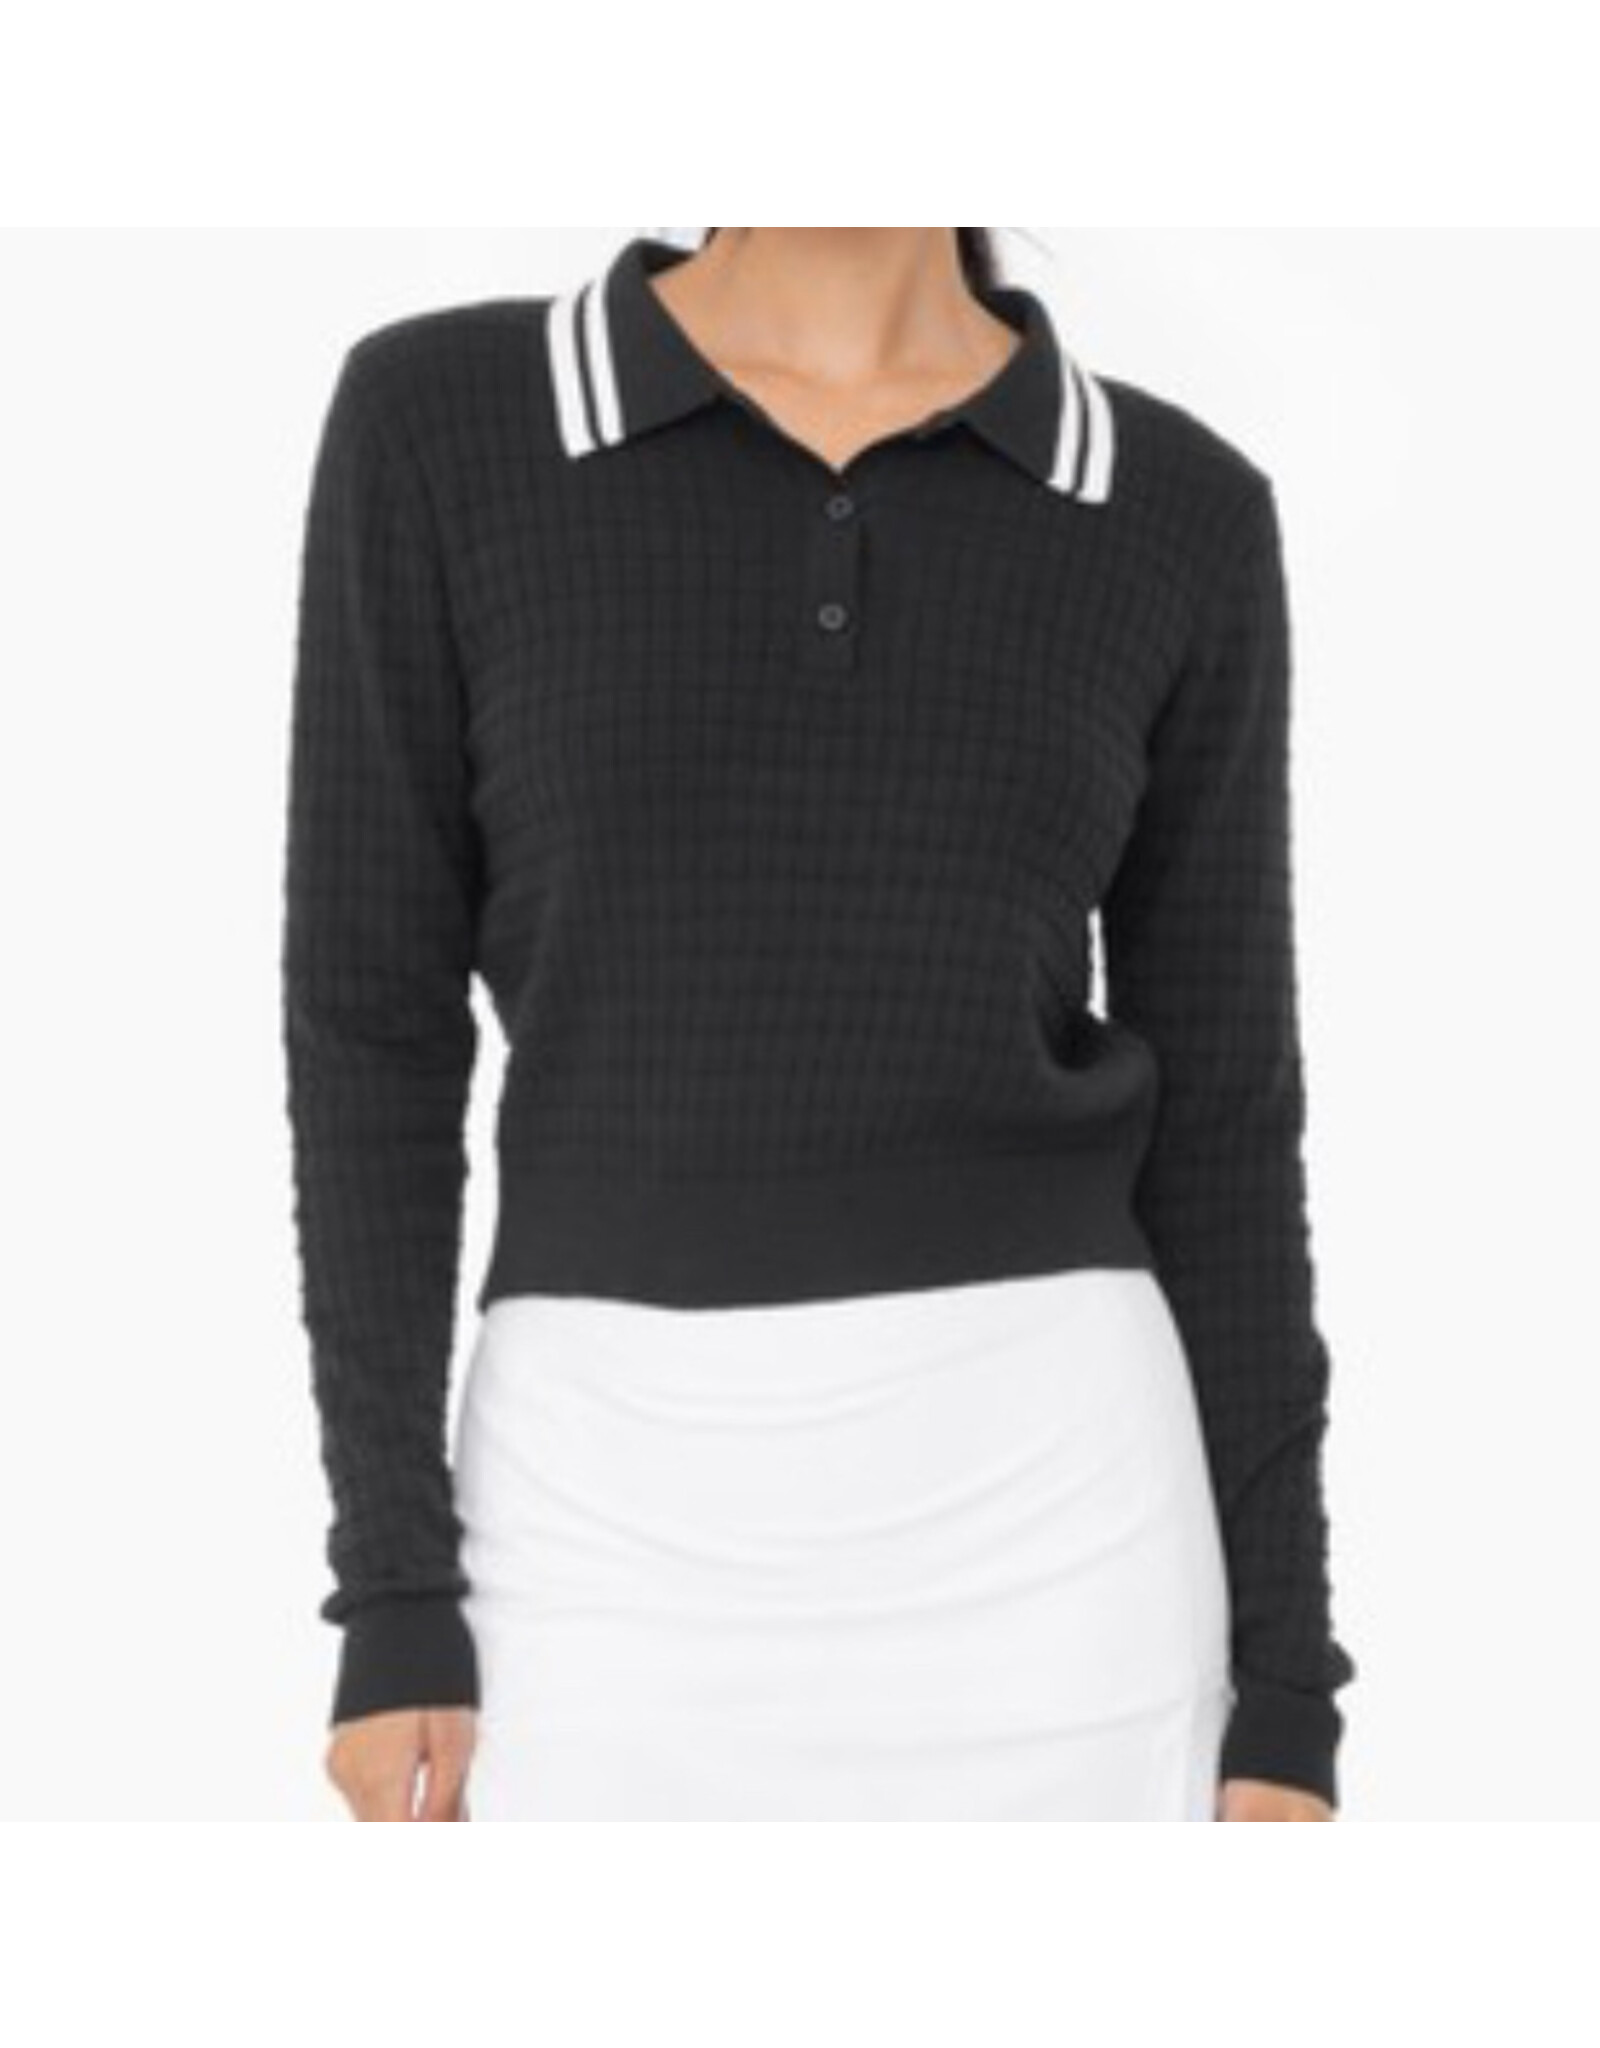 mono b Retro Stripe Jacquard Knit Collared Sweater